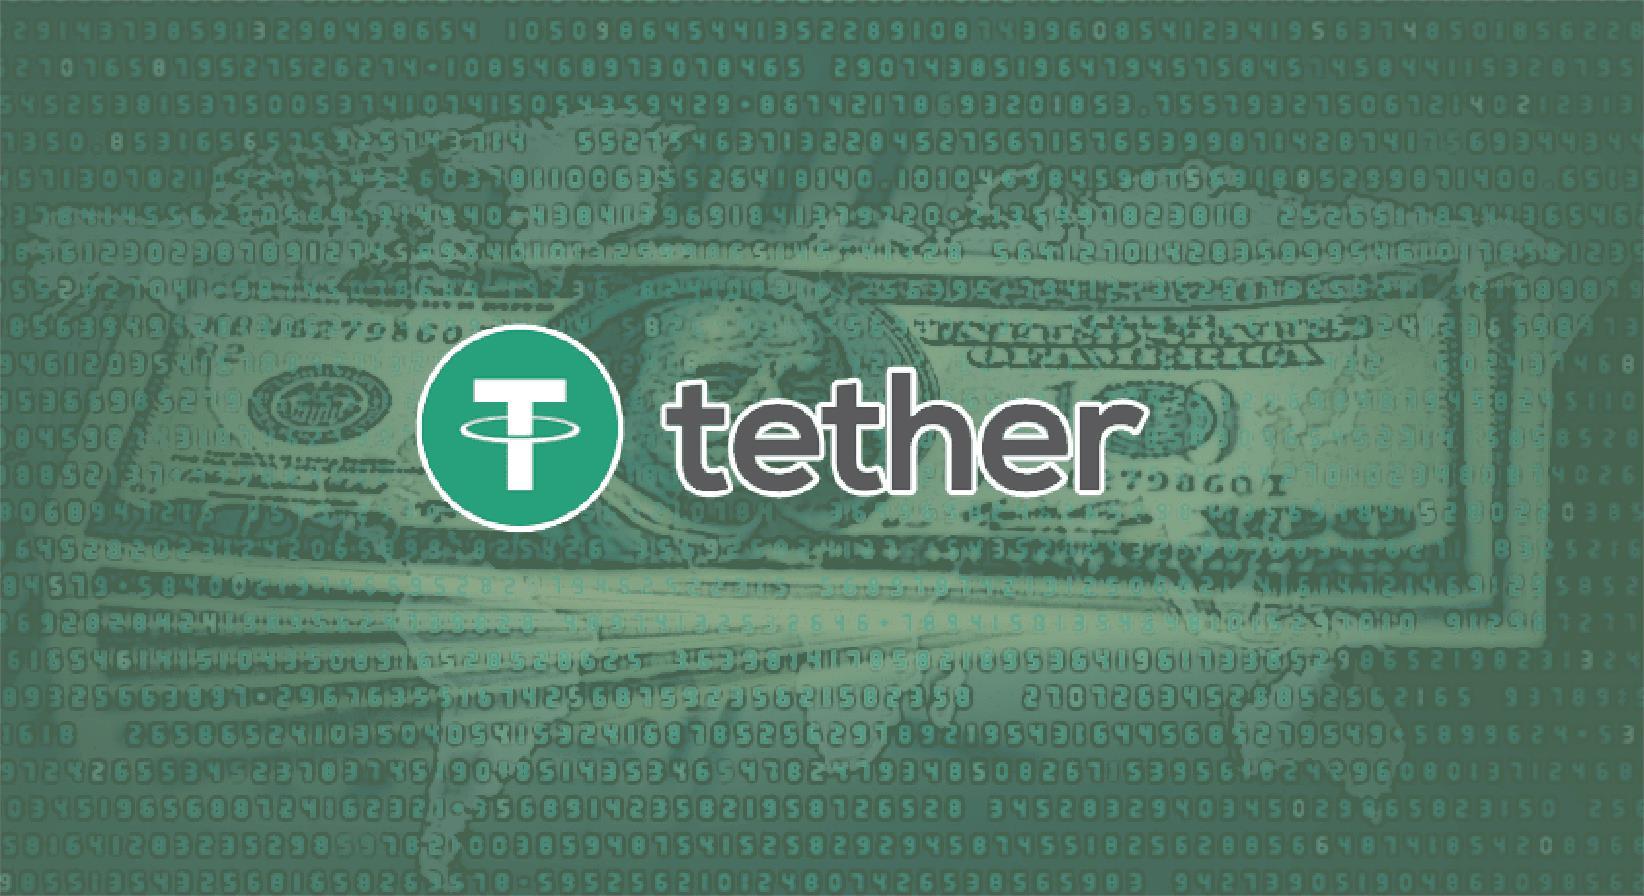 Giá trị giao dịch hàng ngày của Bitcoin trên đà giảm xuống thấp hơn của Tether